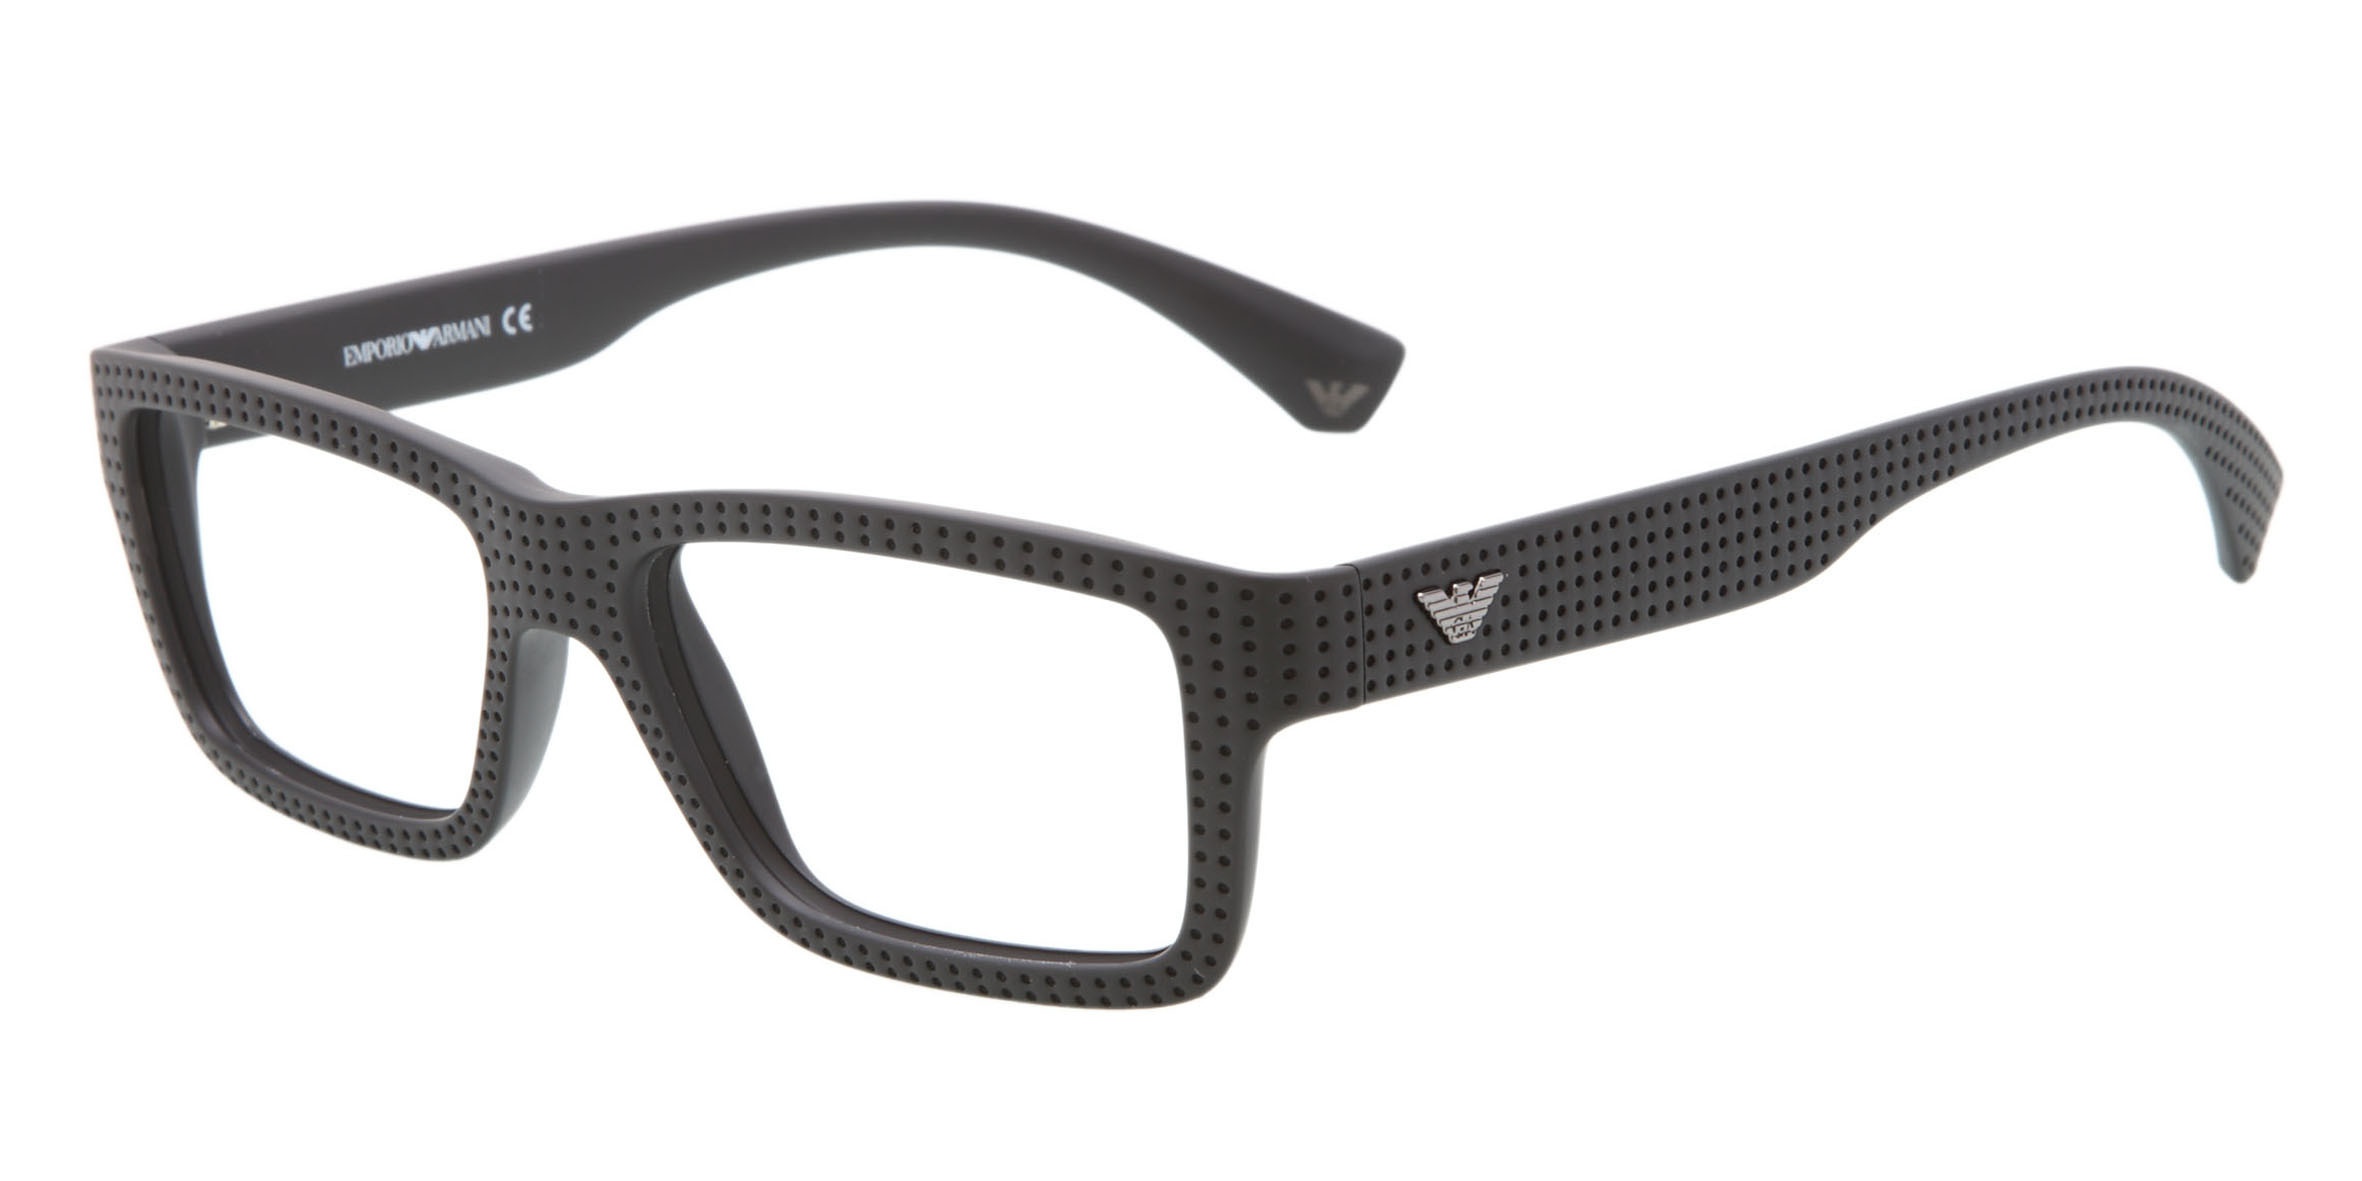 Lunette de vue : acheter une lunette de vue stylée pour une femme